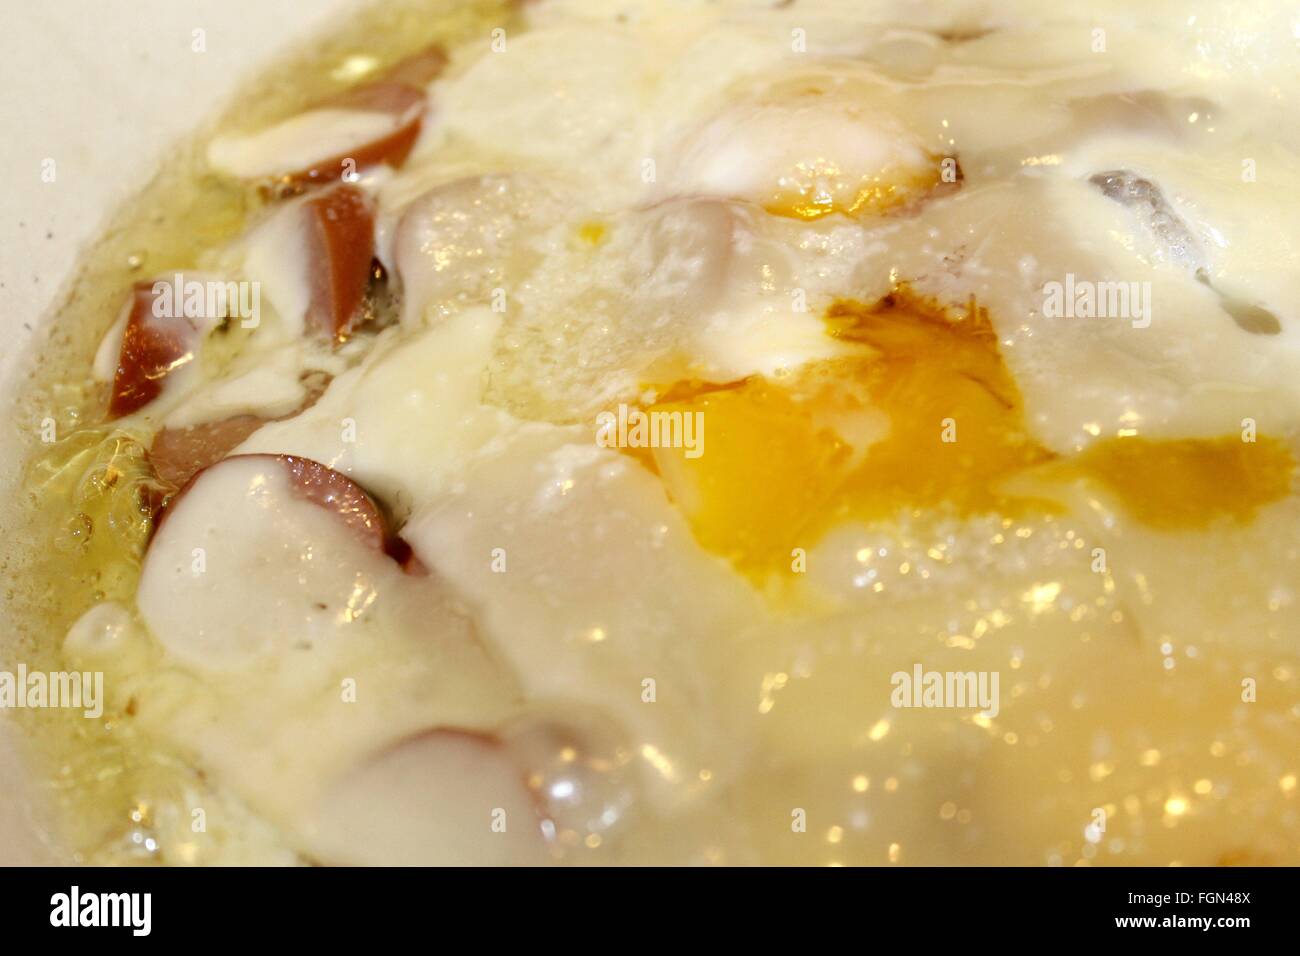 Gericht mit Eiern, Käse und Wurst Stockfoto